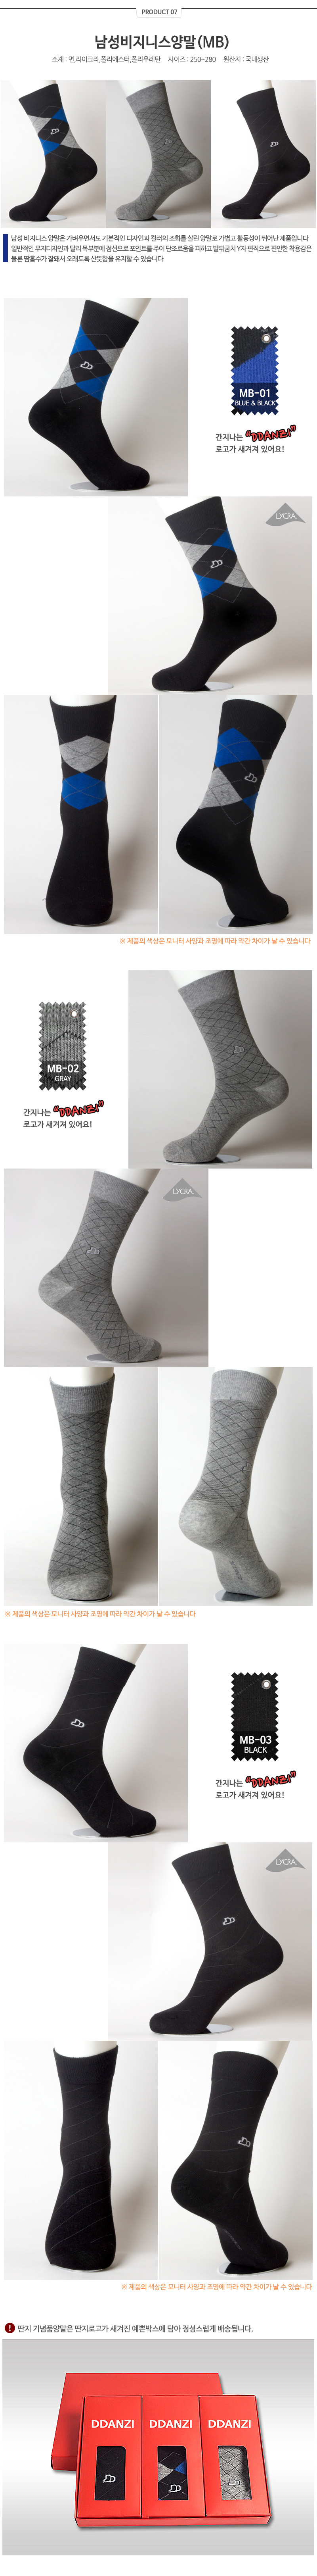 socks_07.jpg